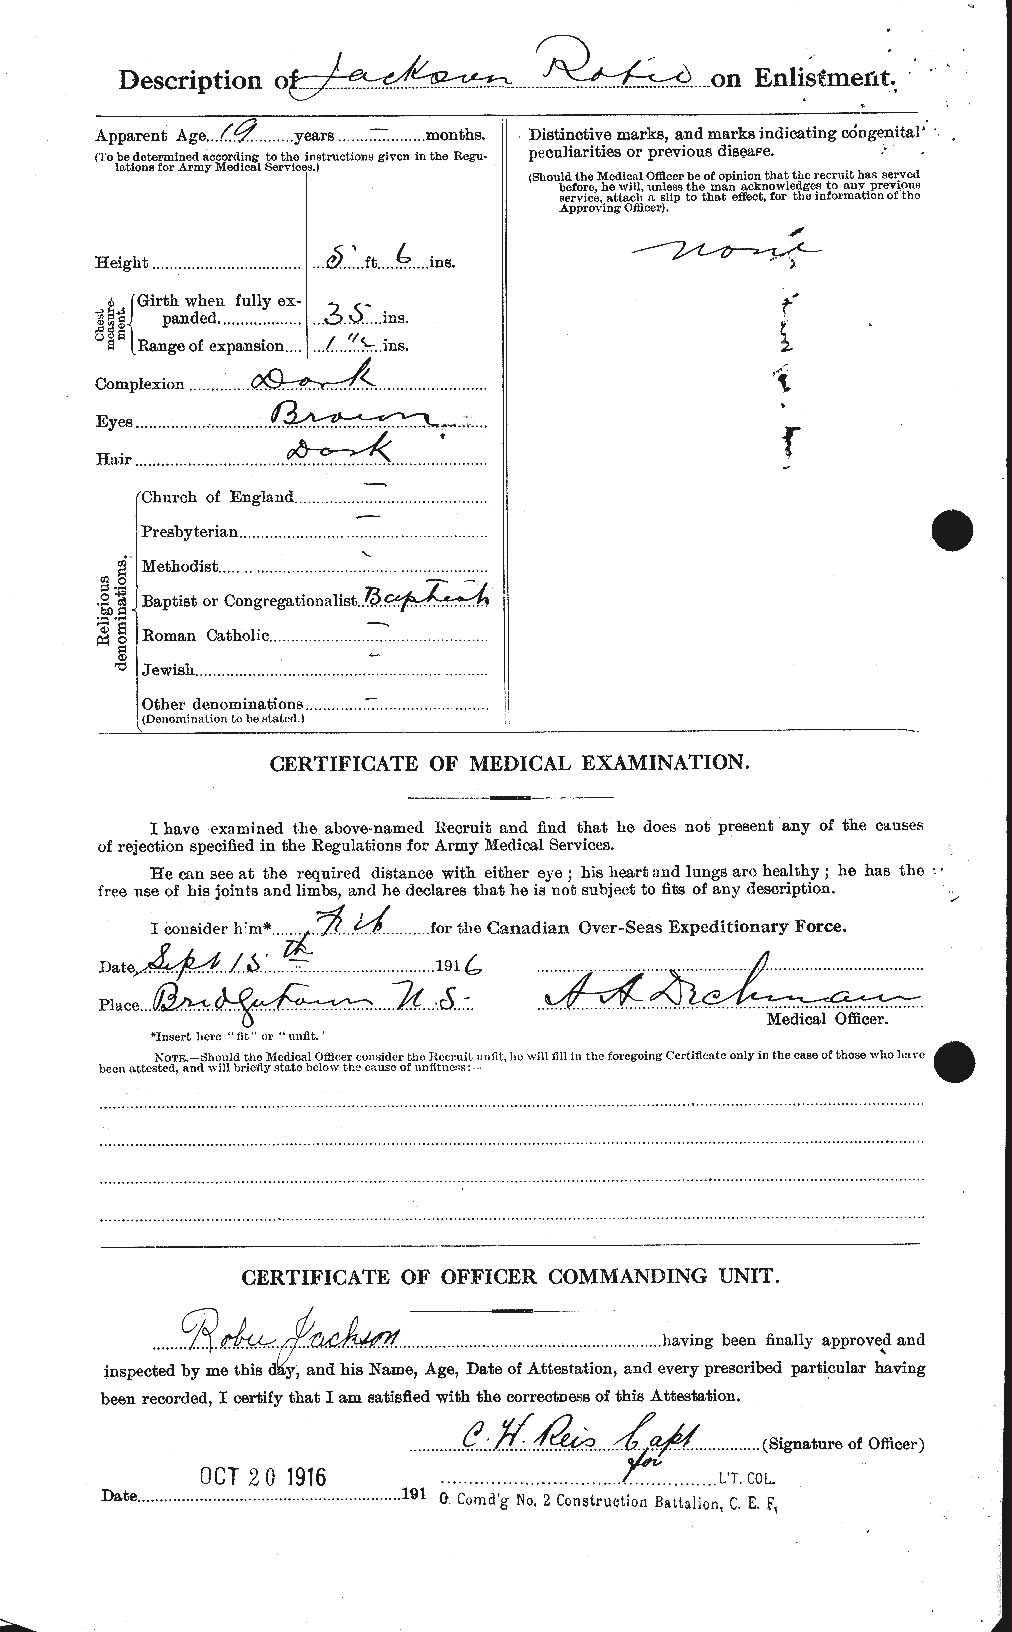 Dossiers du Personnel de la Première Guerre mondiale - CEC 414529b